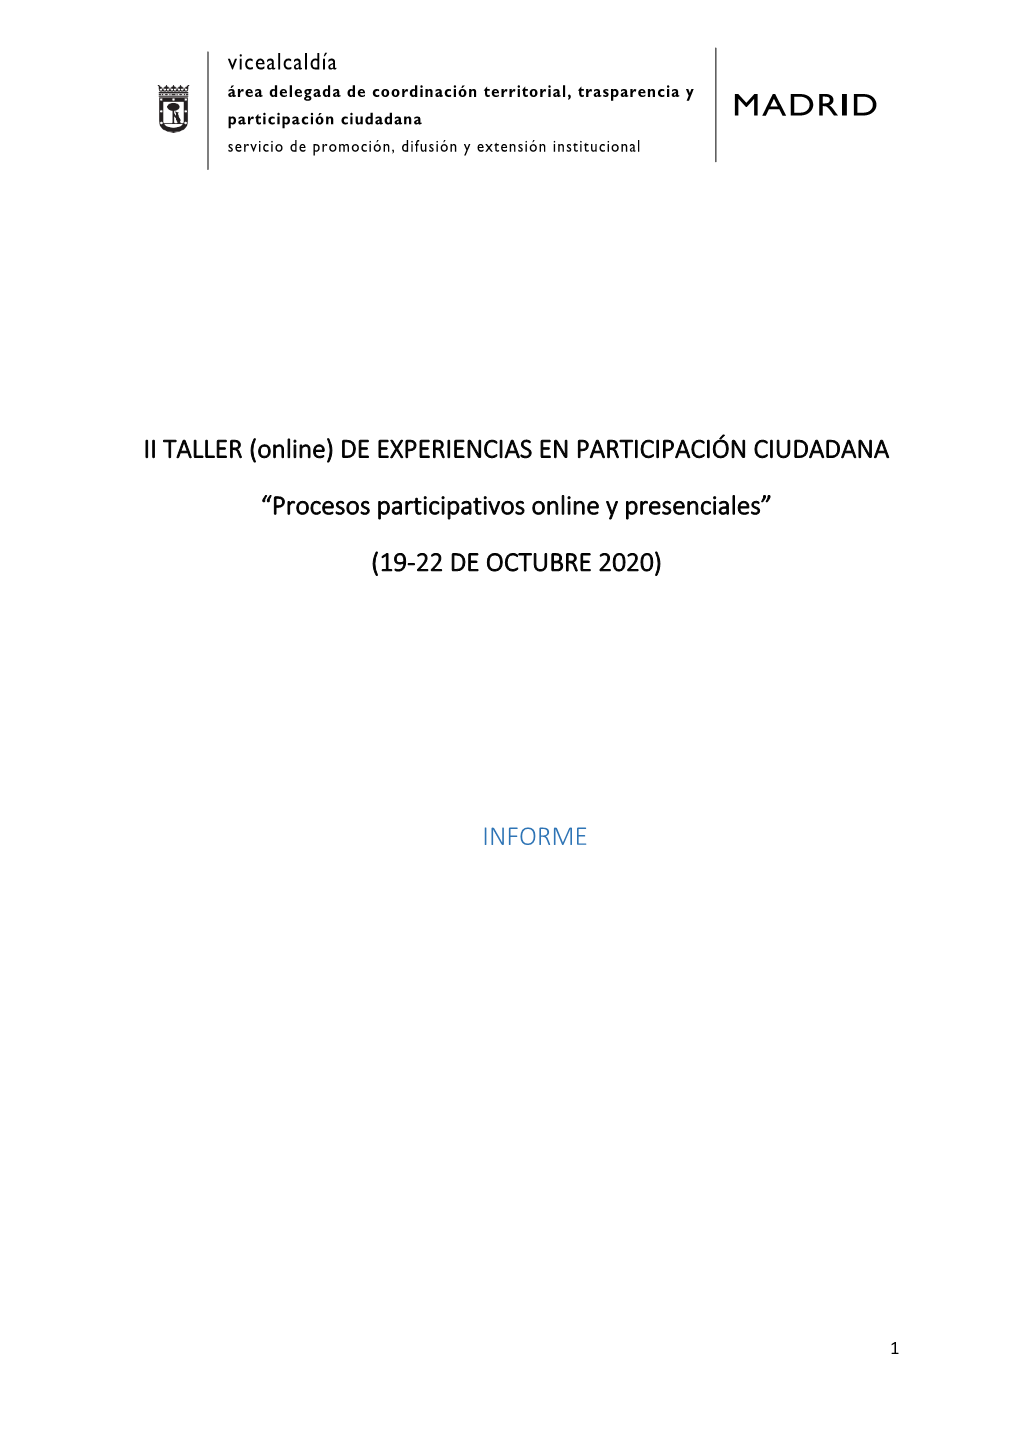 II TALLER (Online) DE EXPERIENCIAS EN PARTICIPACIÓN CIUDADANA